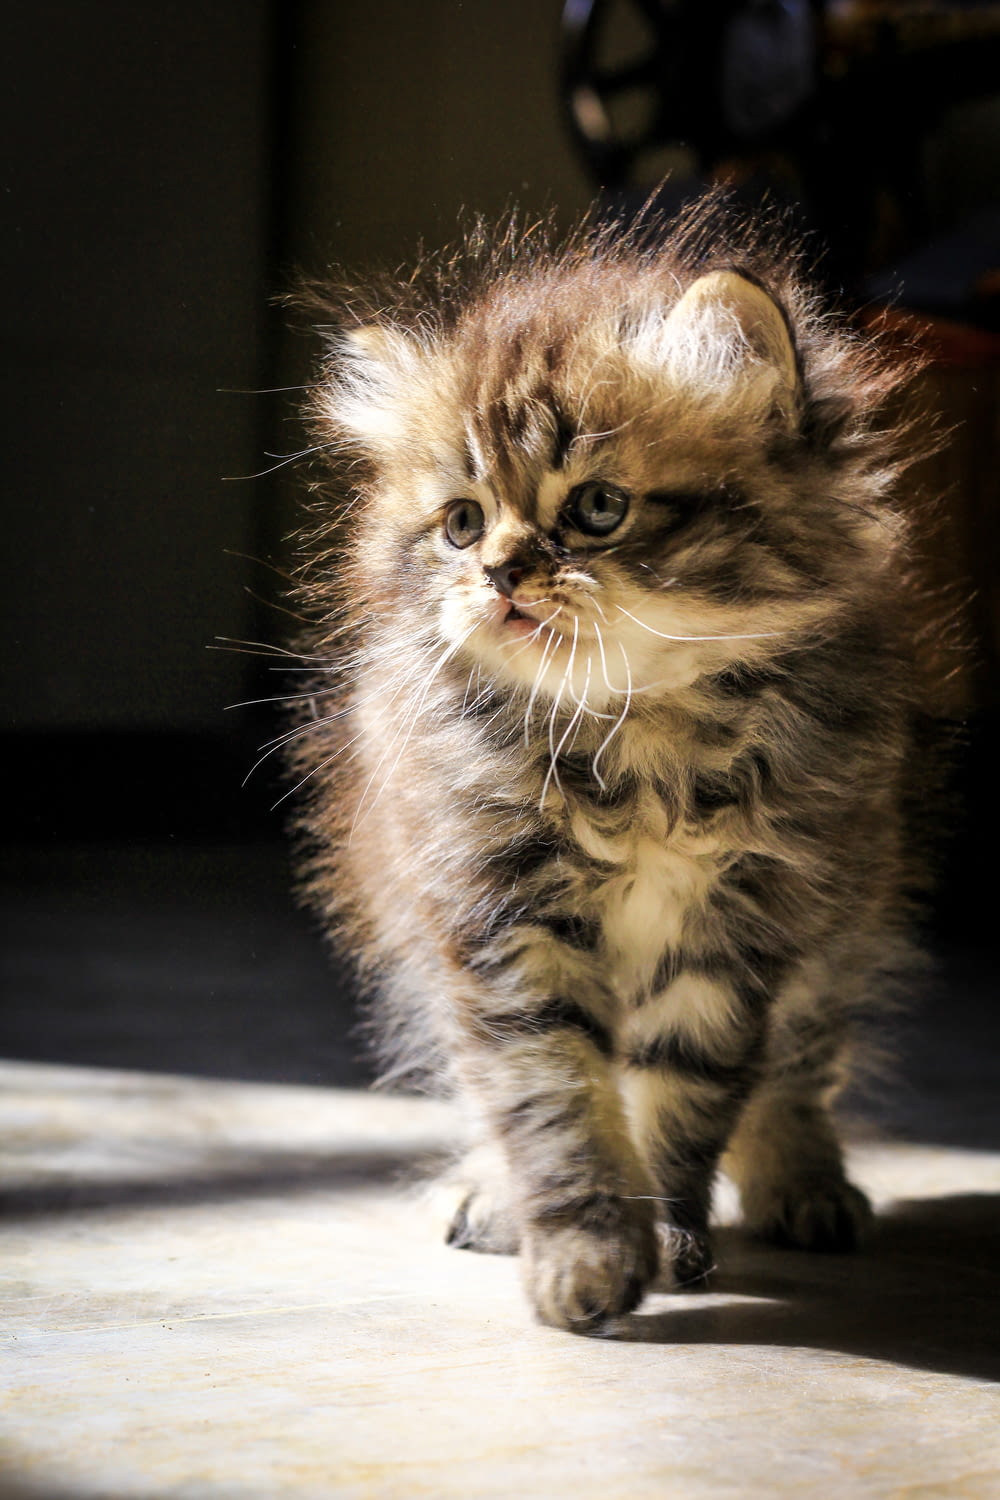 a small kitten walking across a tile floor